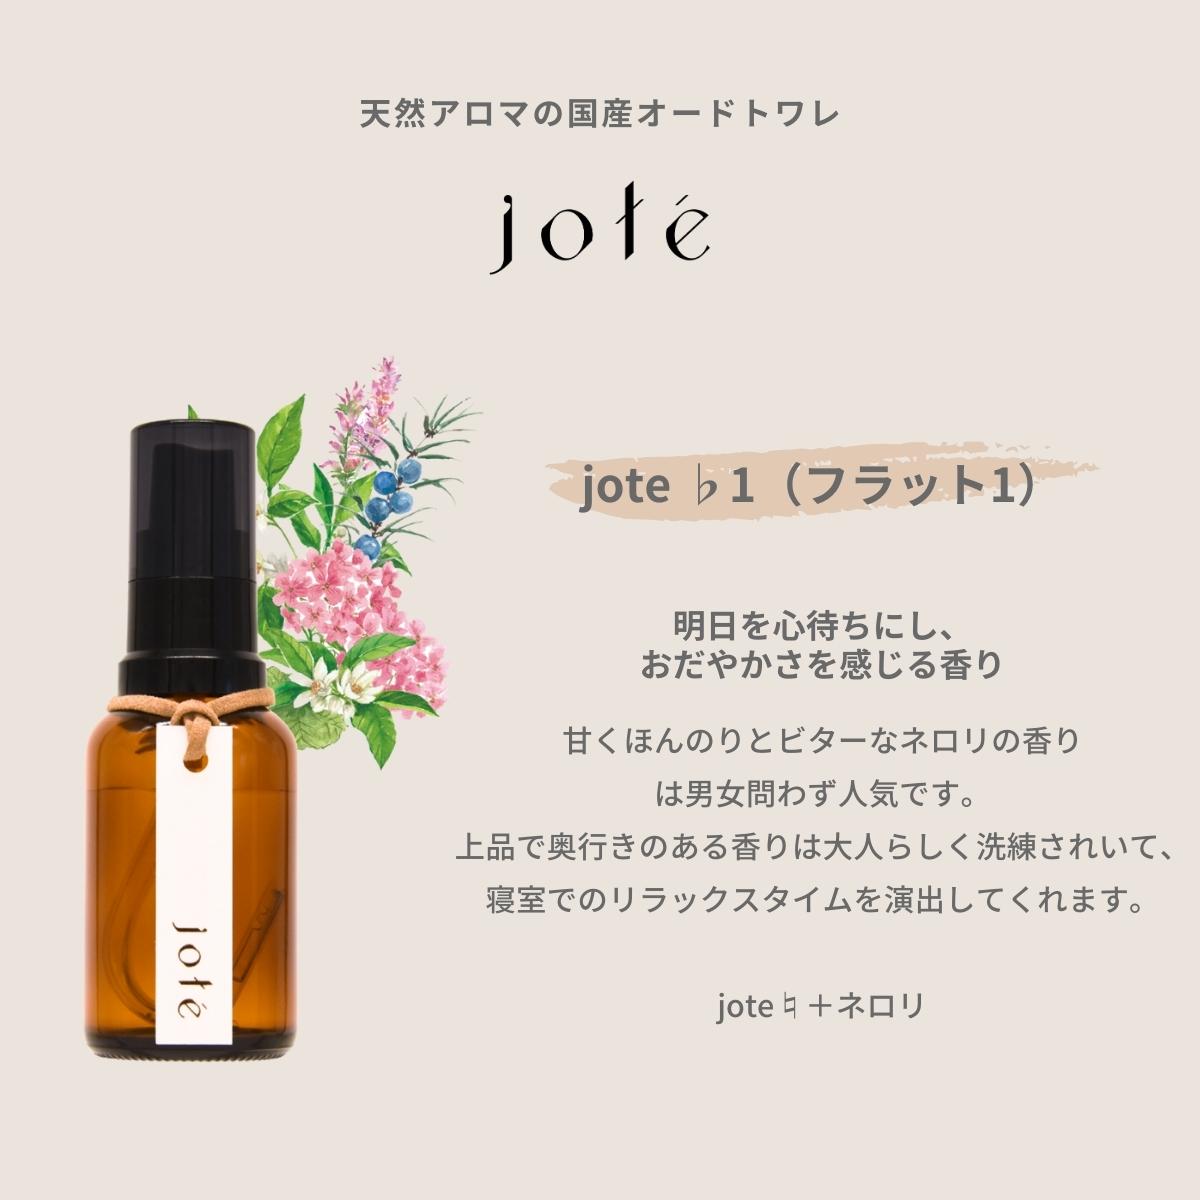 jote ♭1（フラット１）Perfume 30ml《ネロリの香り》オードトワレ